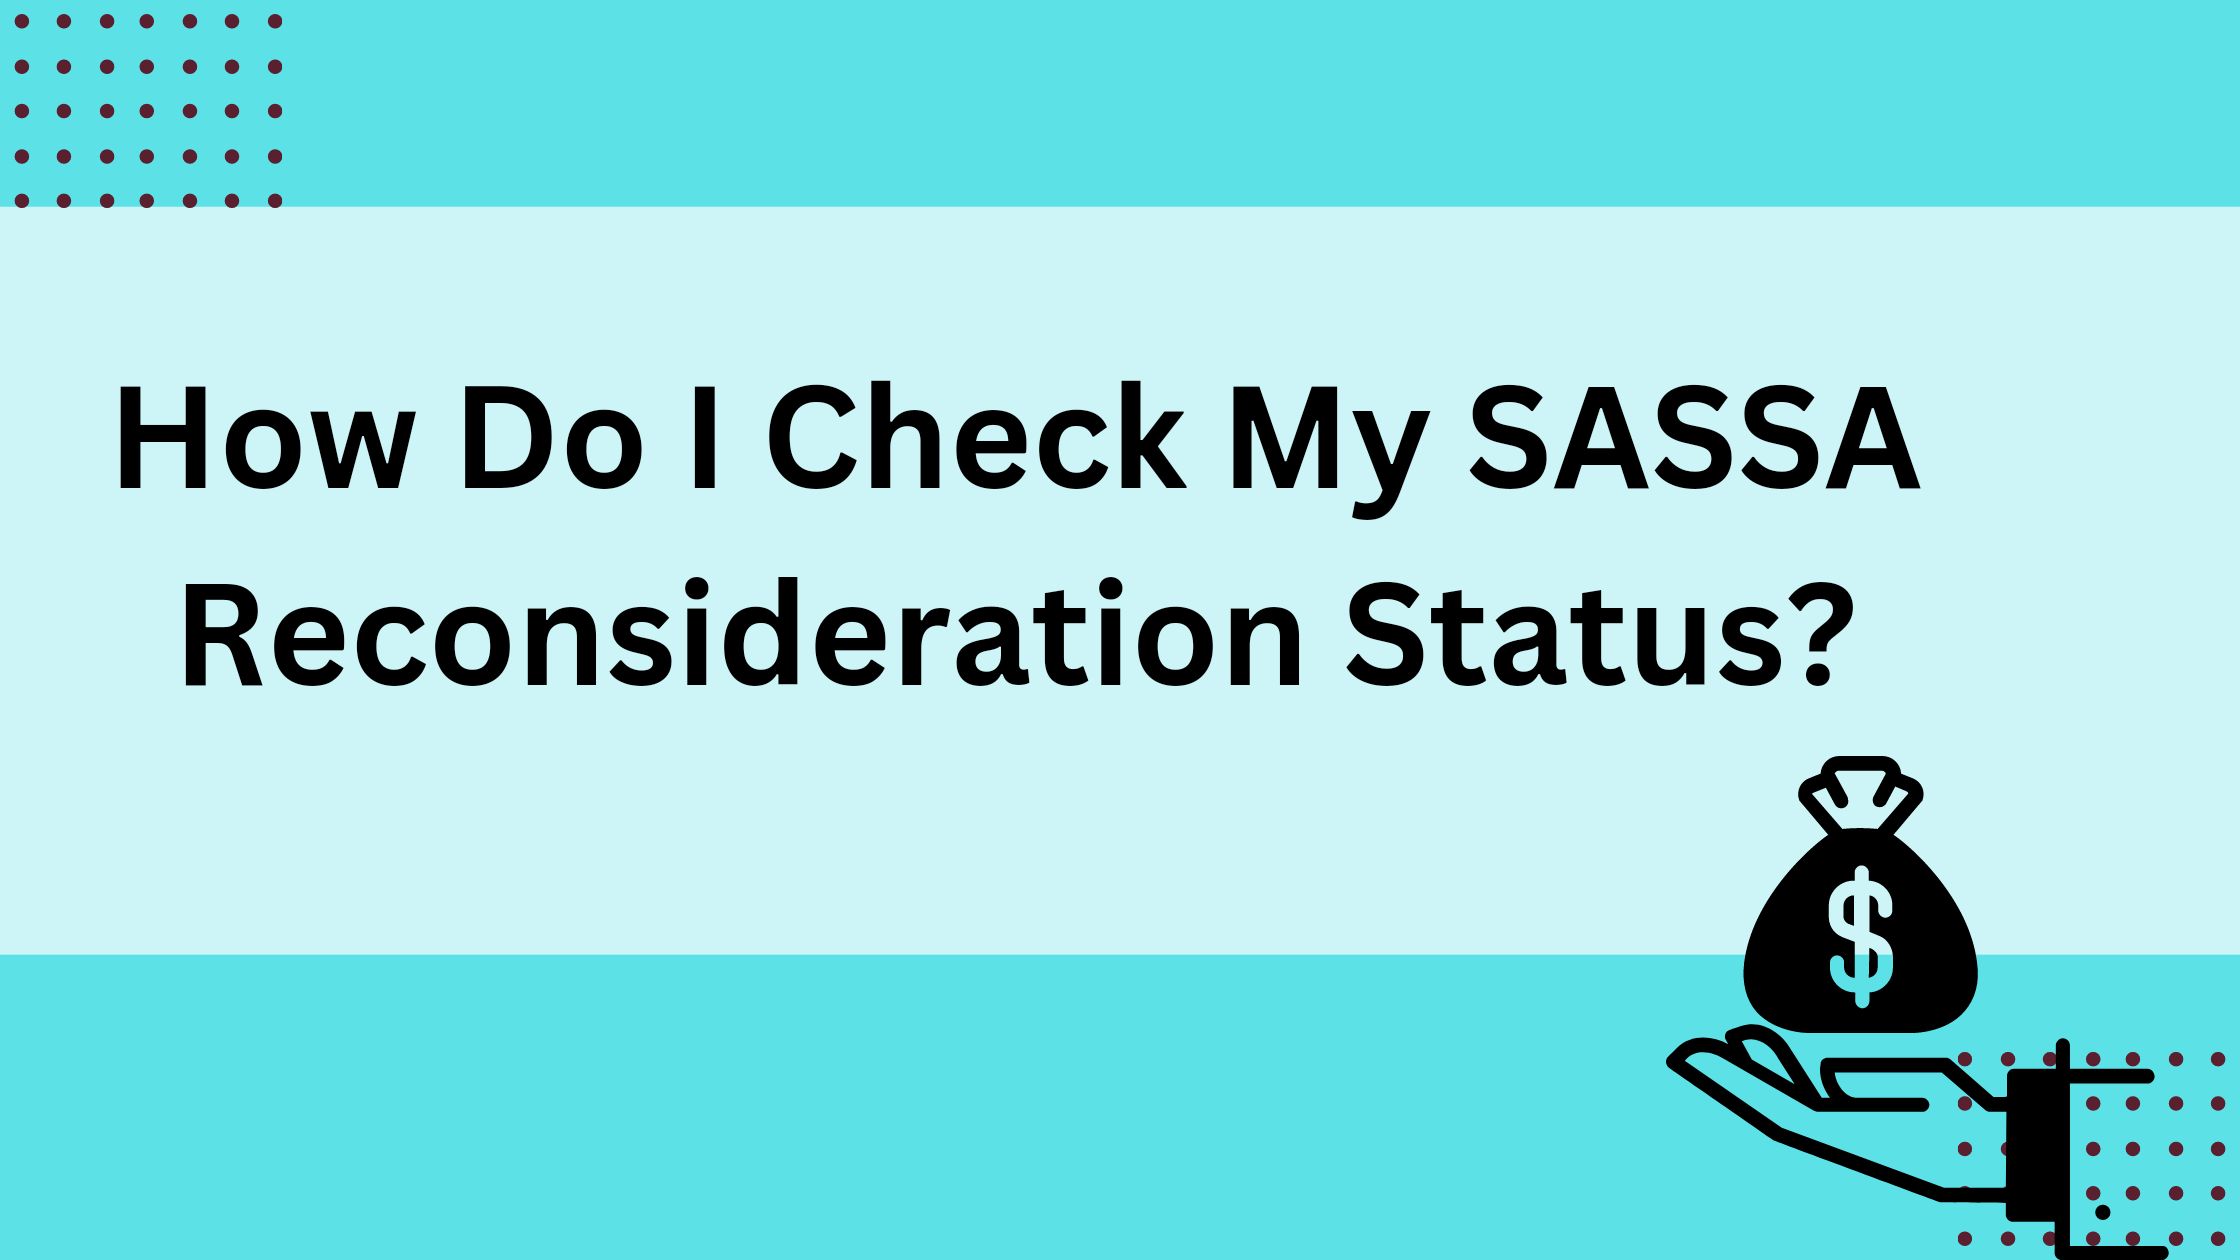 How Do I Check My SASSA Reconsideration Status?